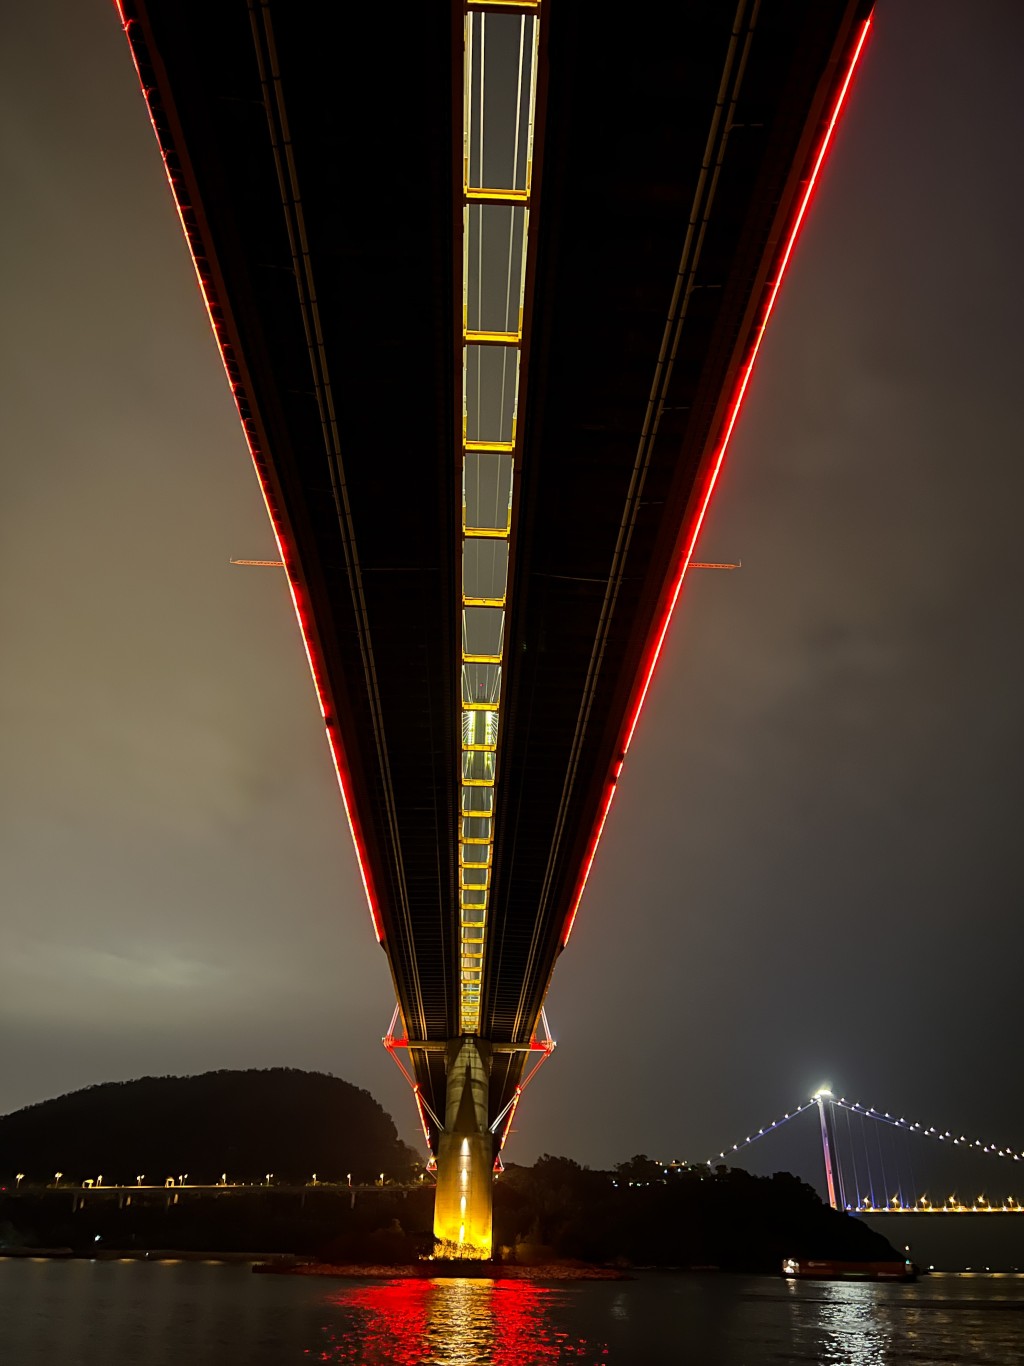 汀九桥及青马大桥晚上亮灯后壮观的夜景。